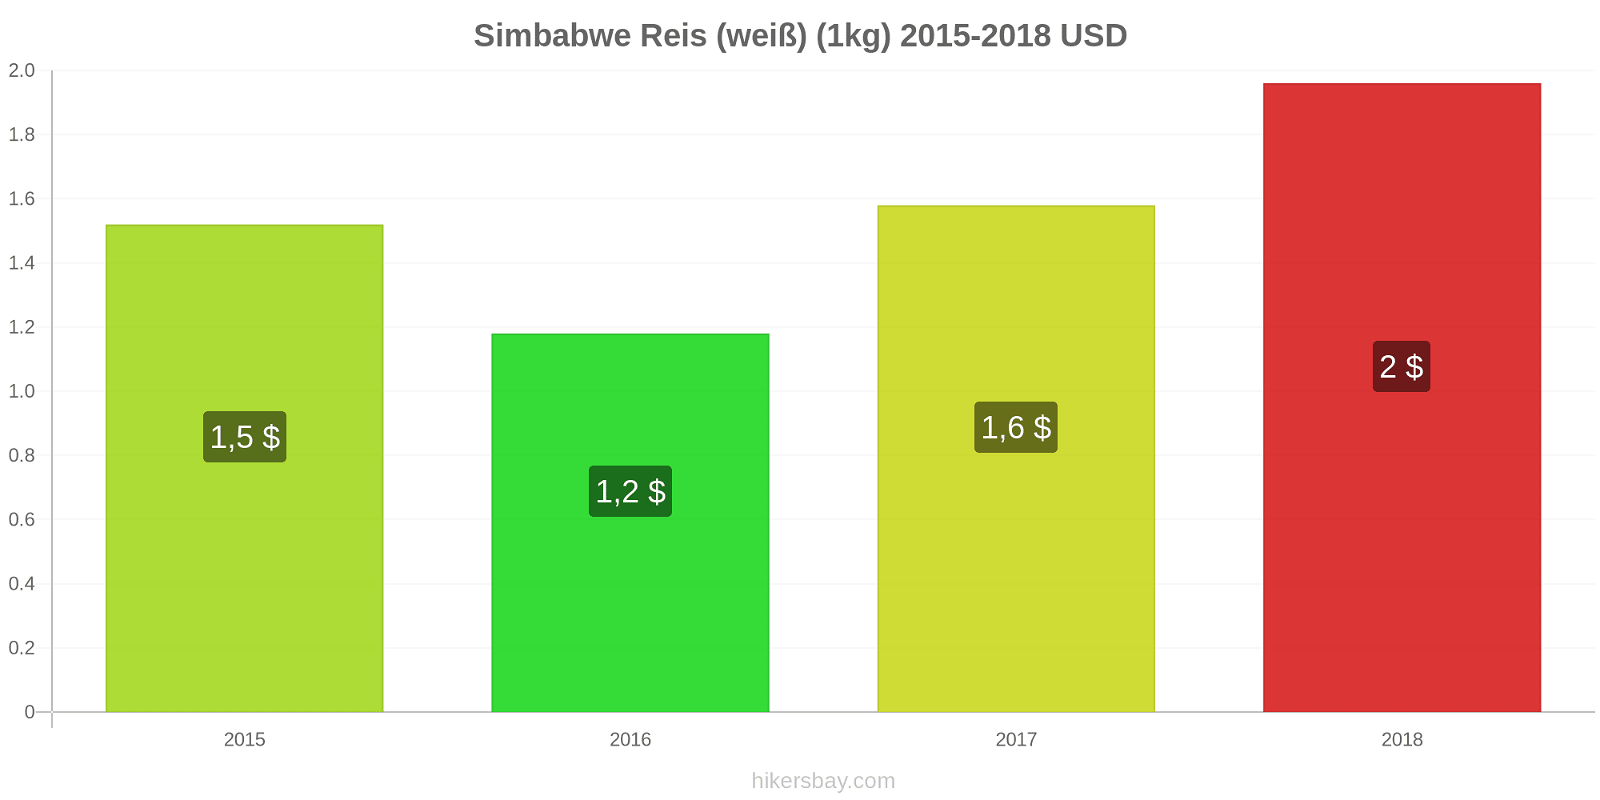 Simbabwe Preisänderungen Reis (weiß) (1kg) hikersbay.com